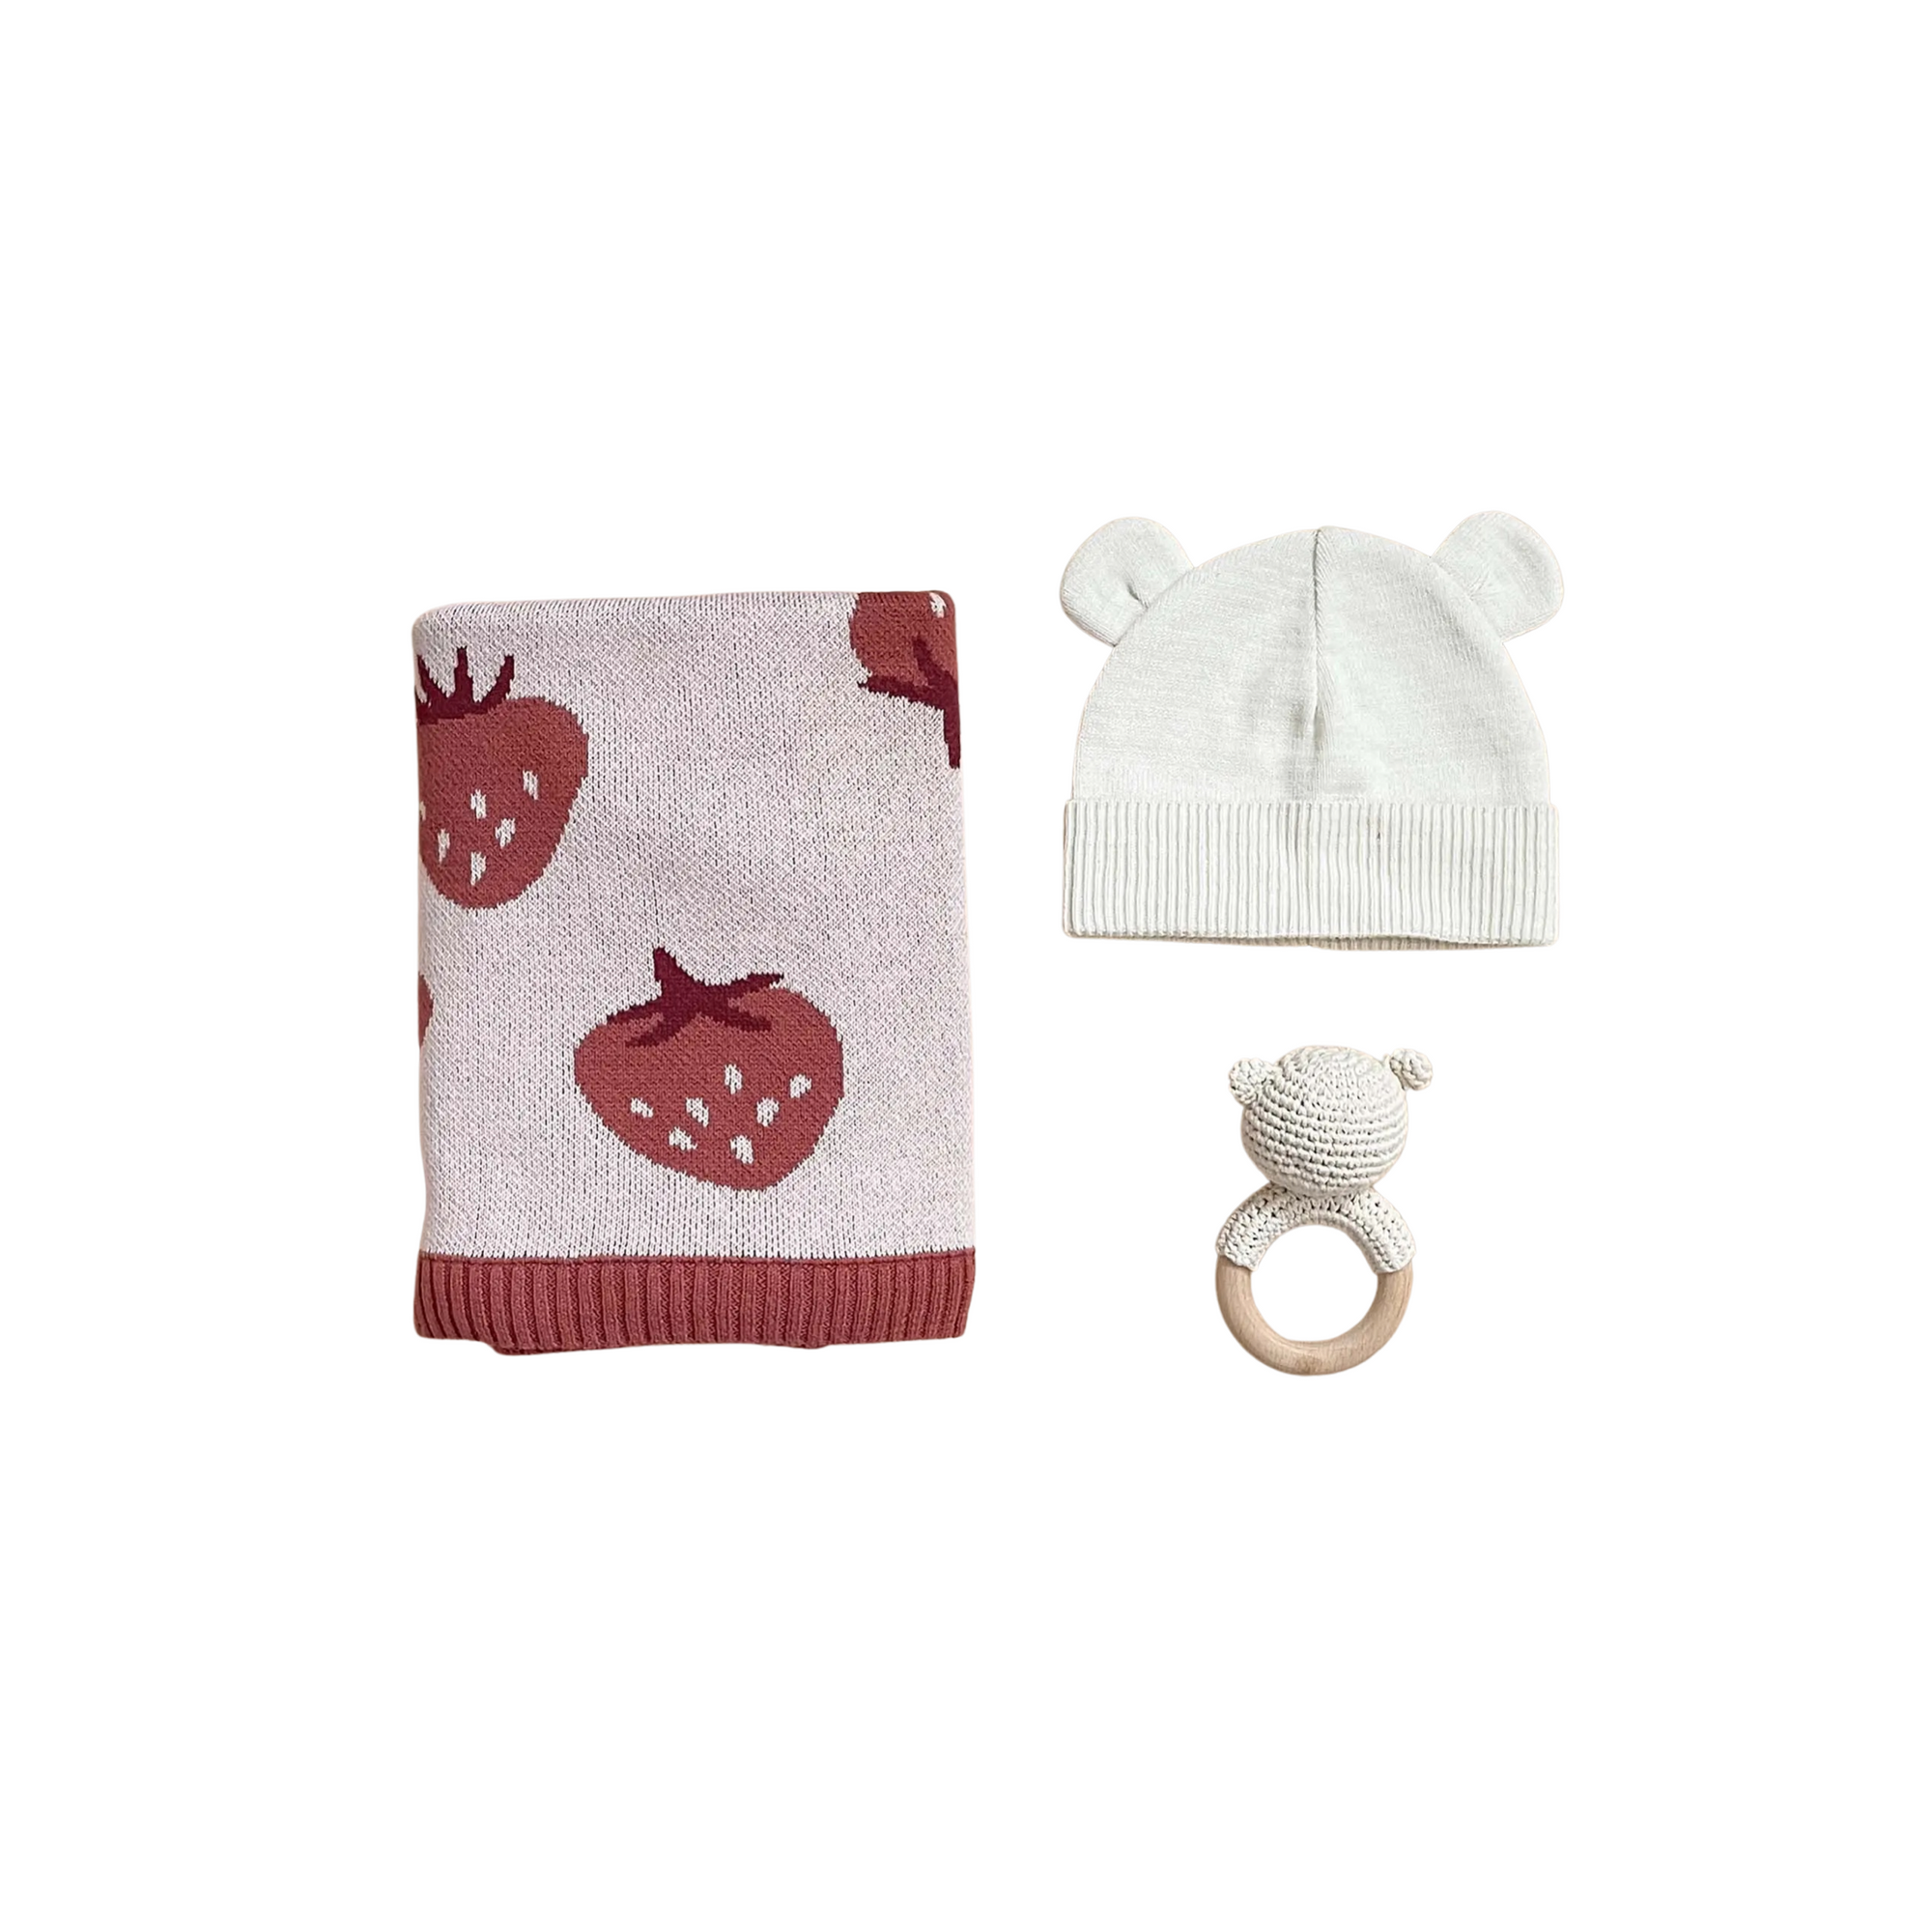 Strawberry Baby Blanket Gift Set